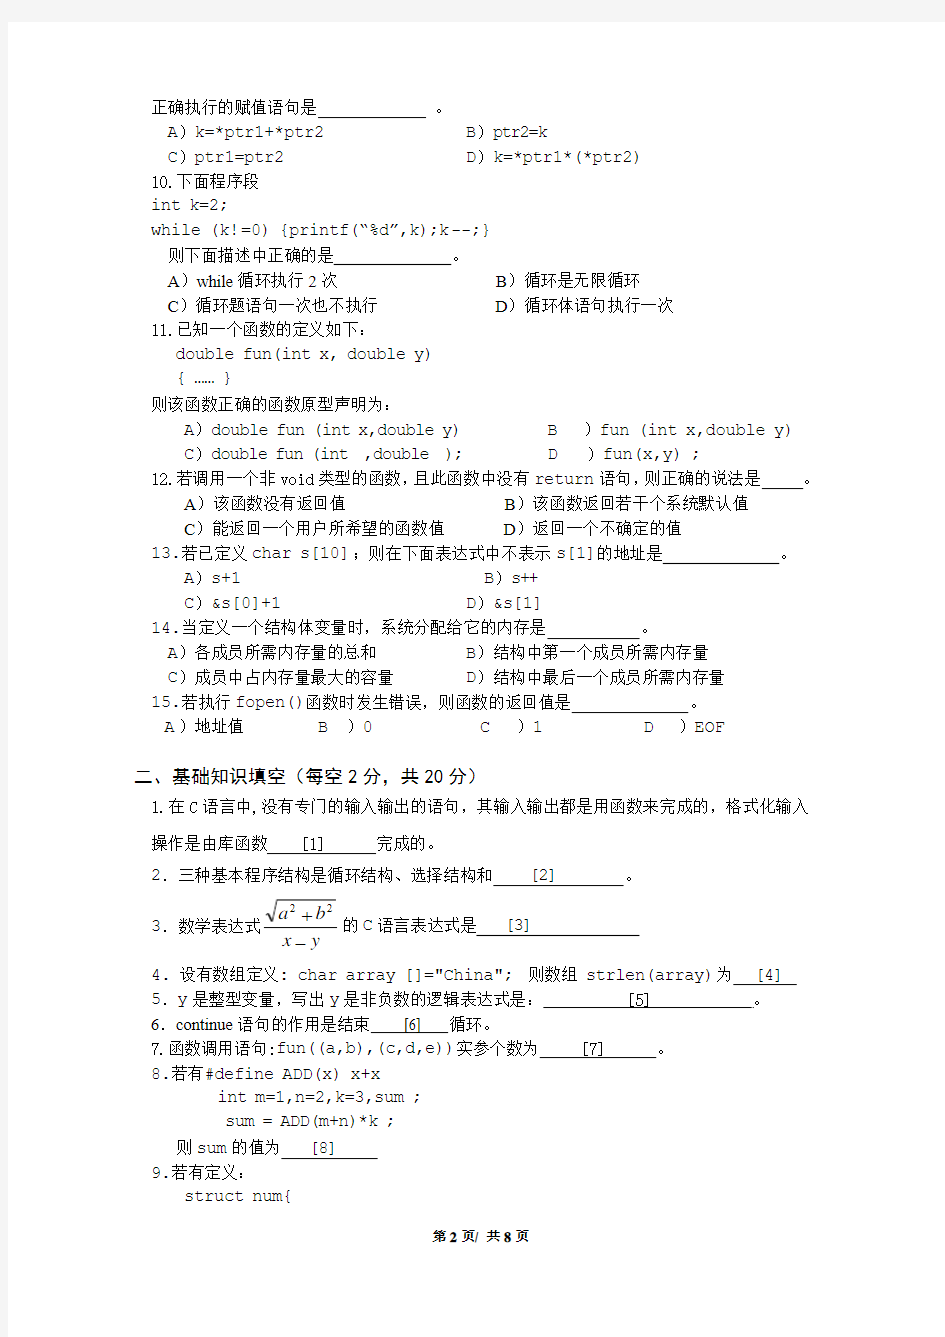 南京信息工程大学试卷2011-2012(2)C语言程序设计试卷(文科)-B